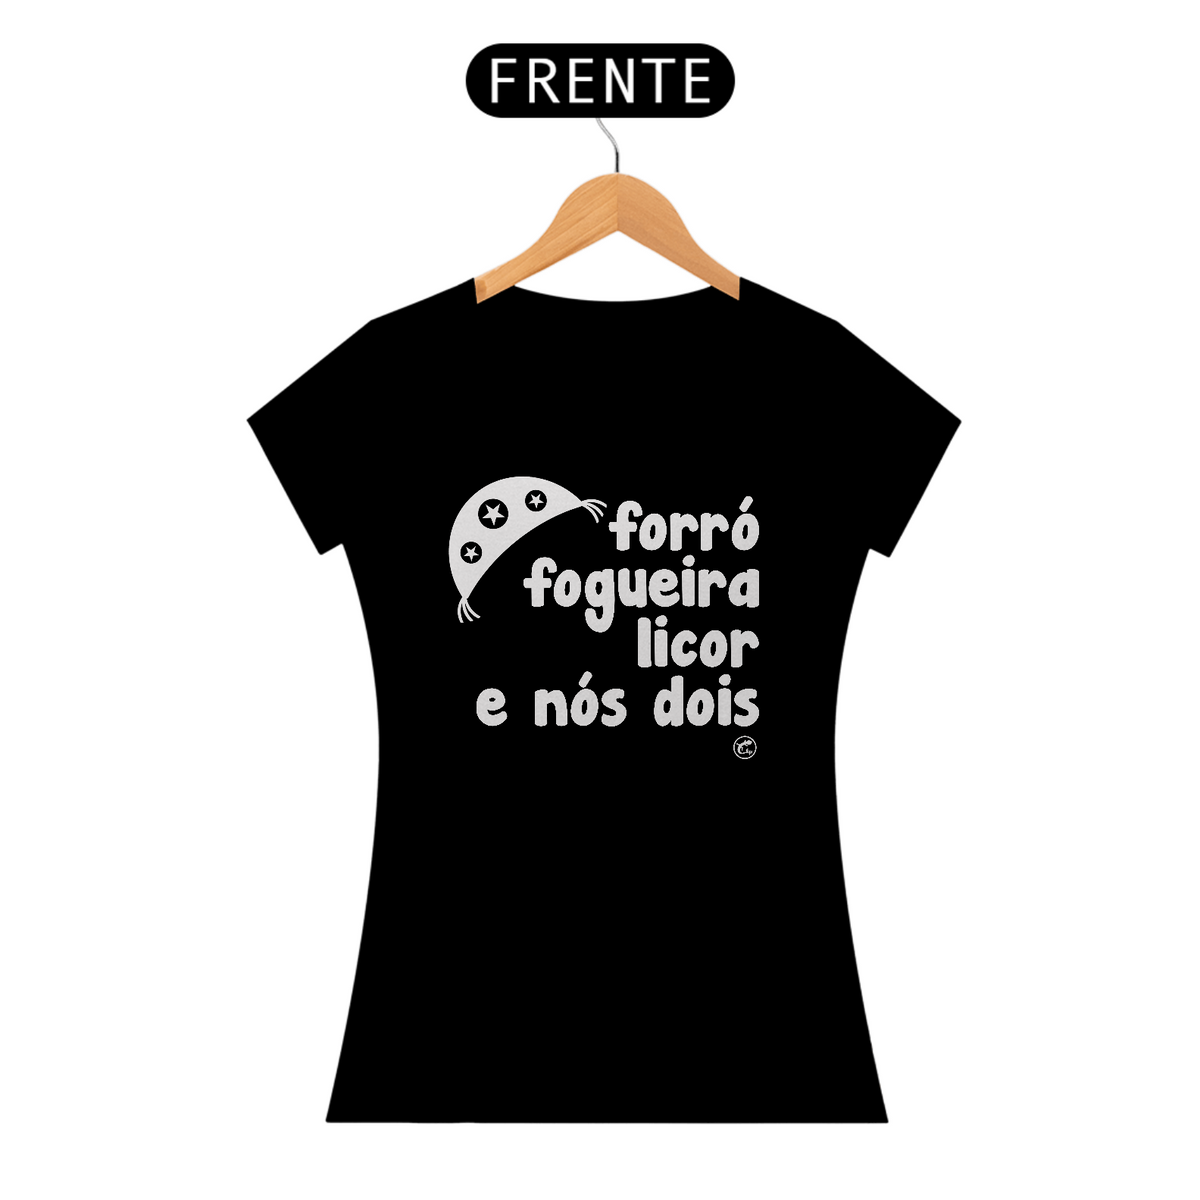 Nome do produto: Camiseta de São João - Forró, Fogueira Licor e nós dois